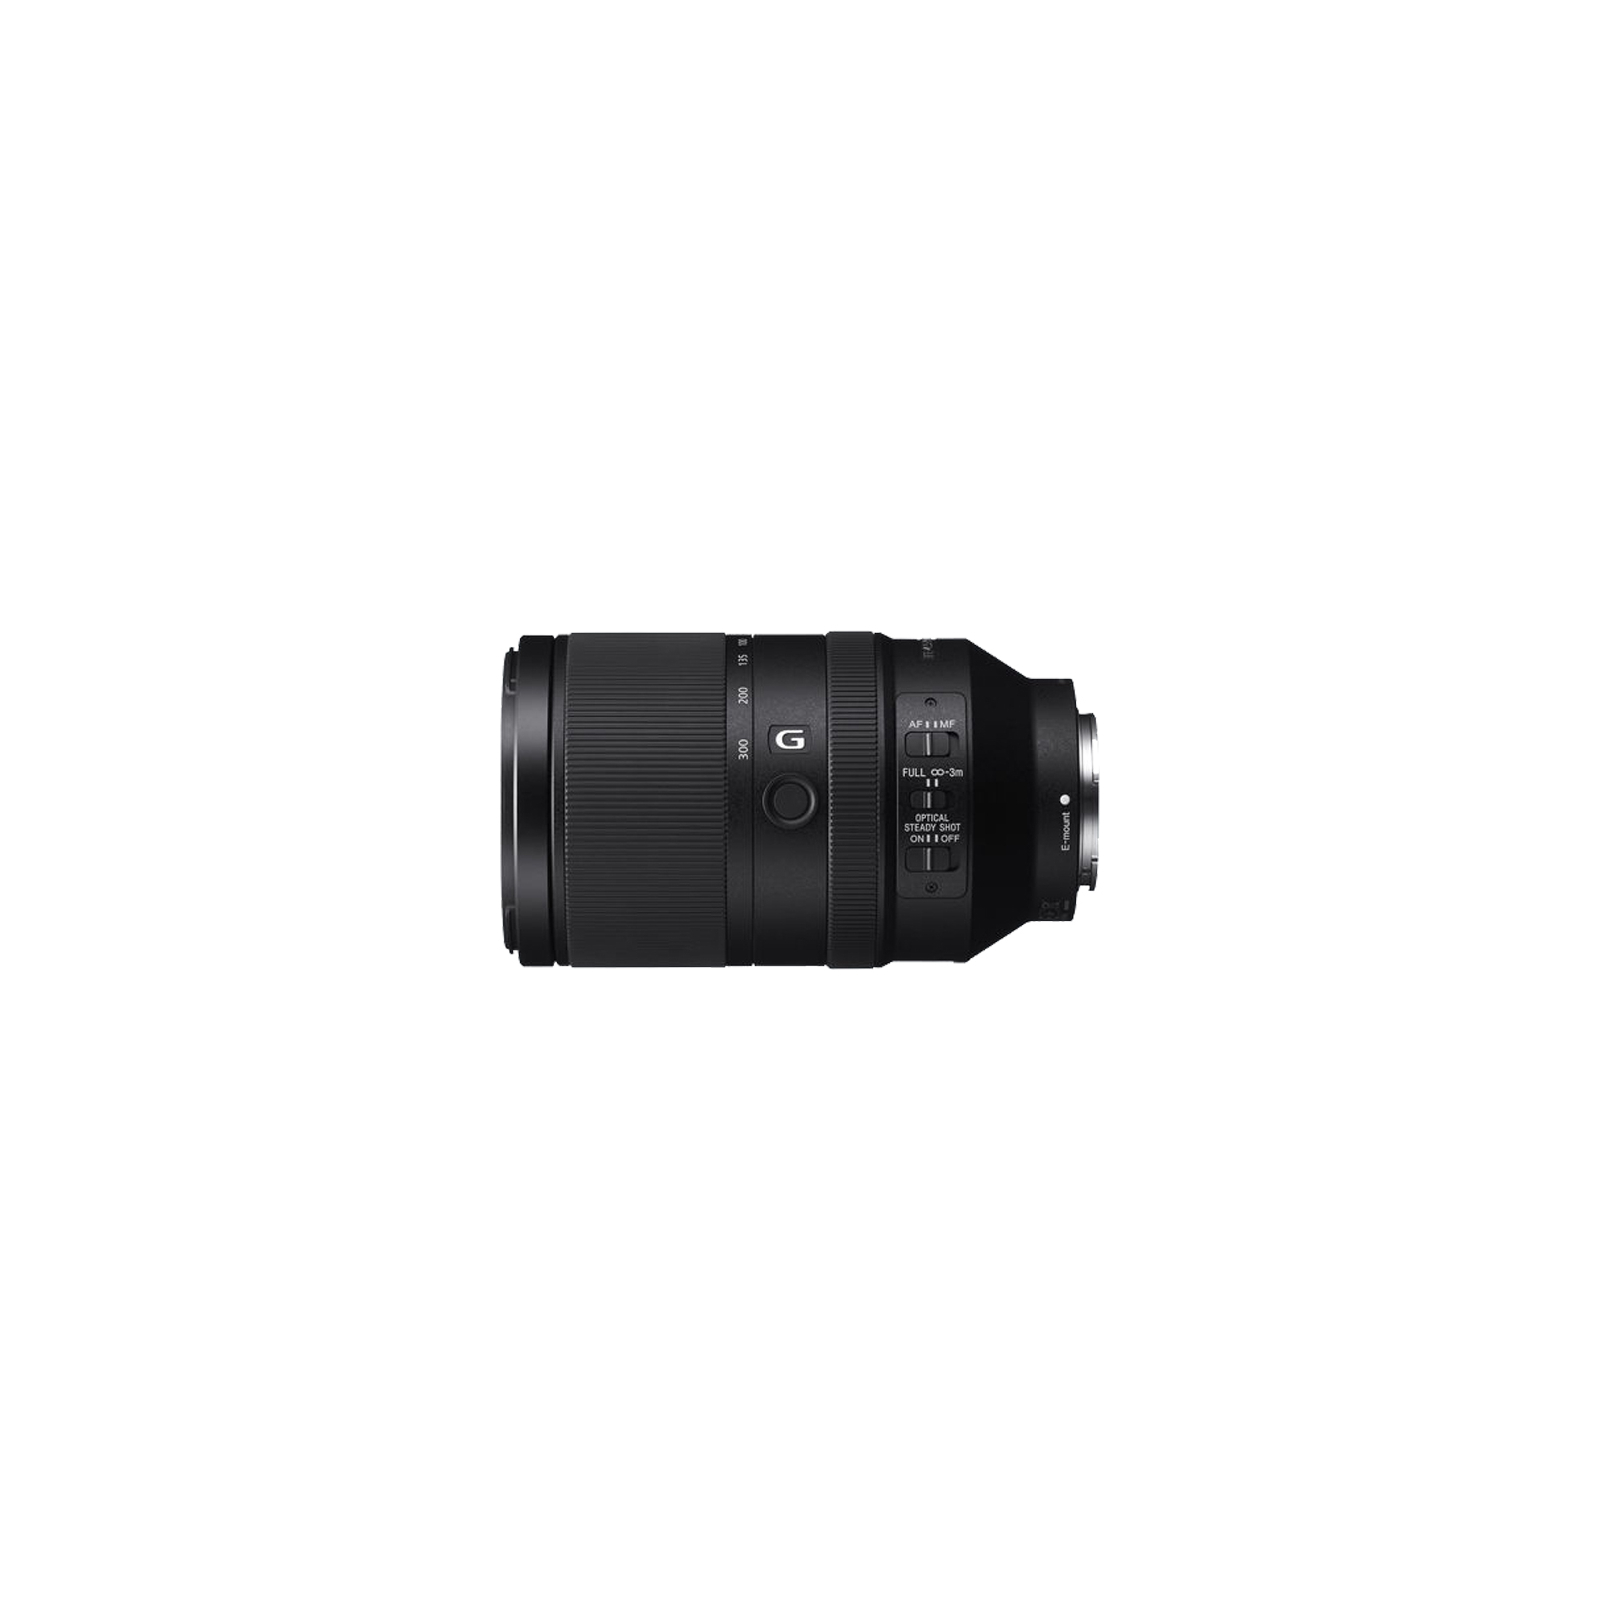 Об'єктив Sony 70-300mm, f/4.5-5.6 G OSS для камер NEX FF (SEL70300G.SYX) зображення 2